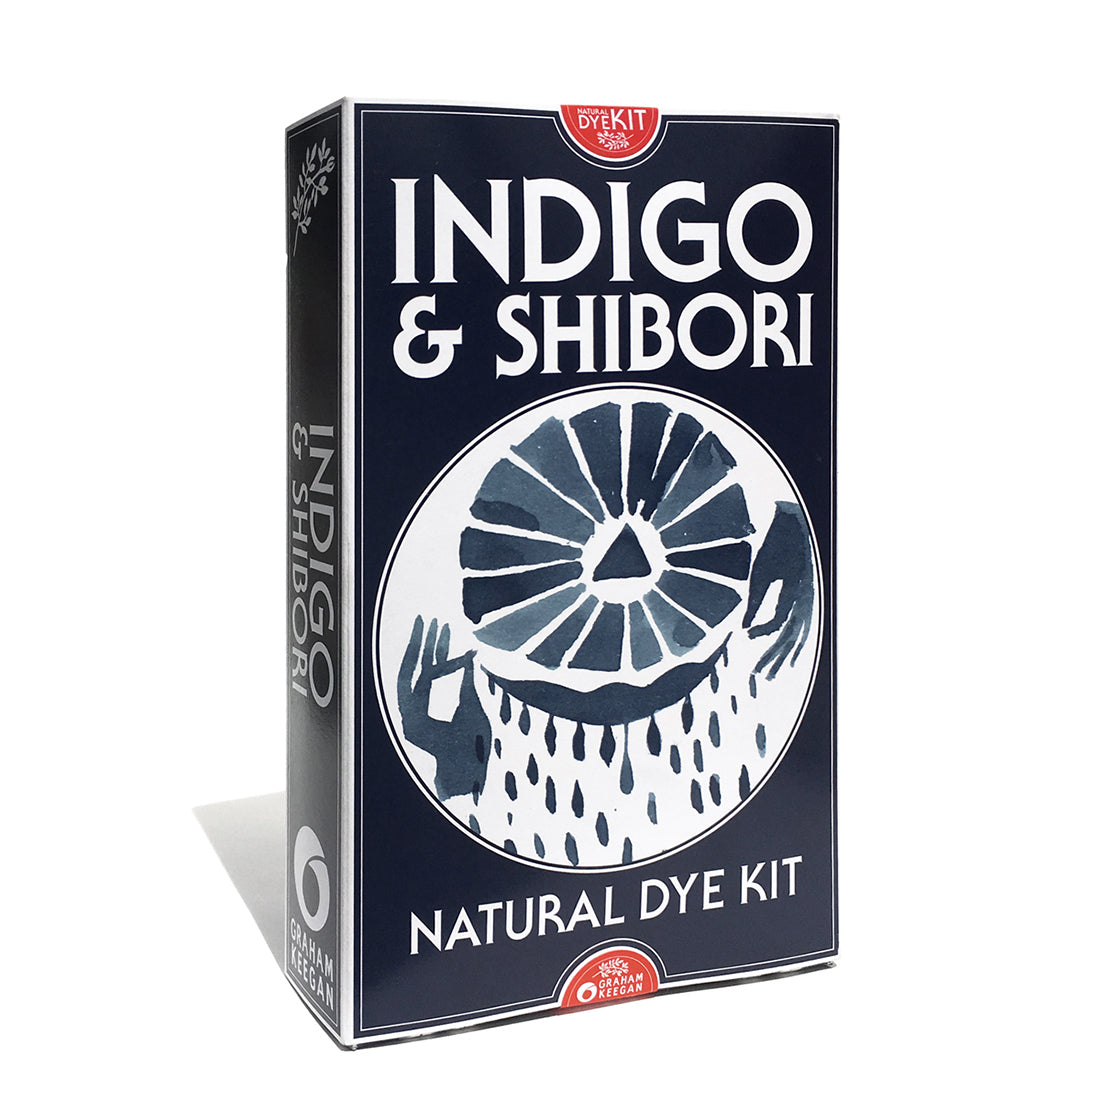 Indigo and Shibori Natural Dye Kit